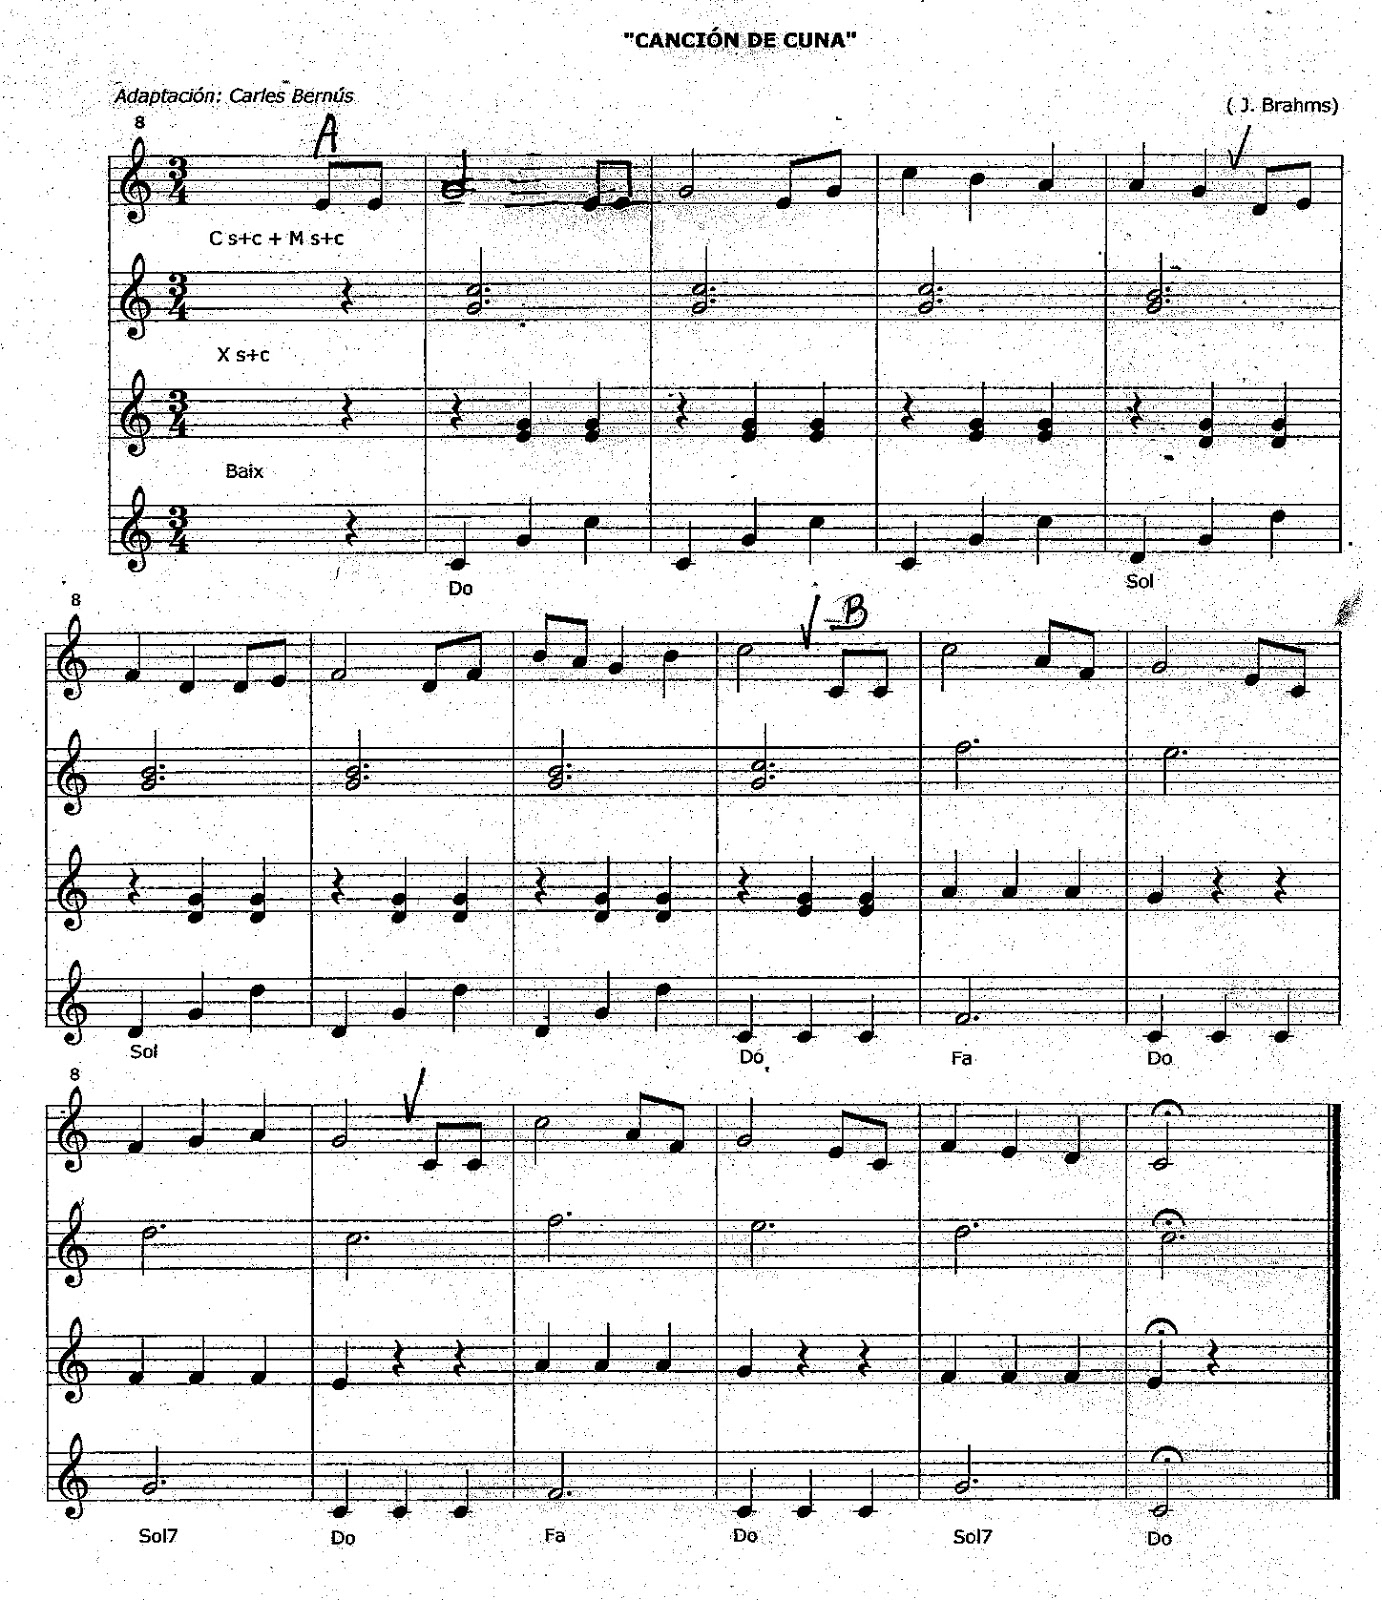 Nuestra cita musical: El lied - "Canción de cuna" - J. Brahms